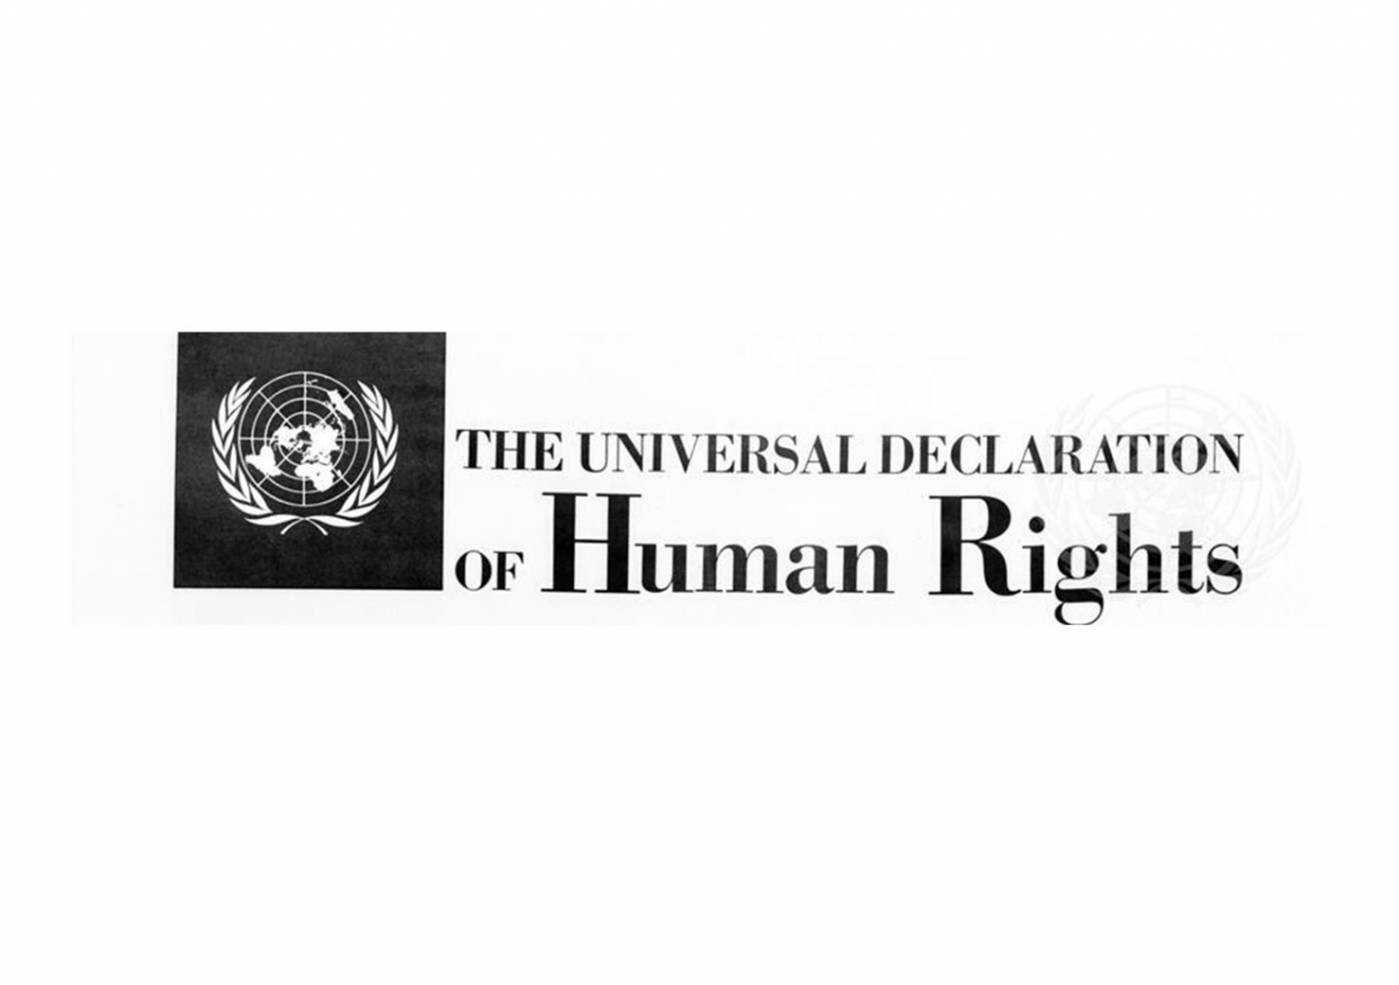 Menneskerettigheder - strandet på en øde ø